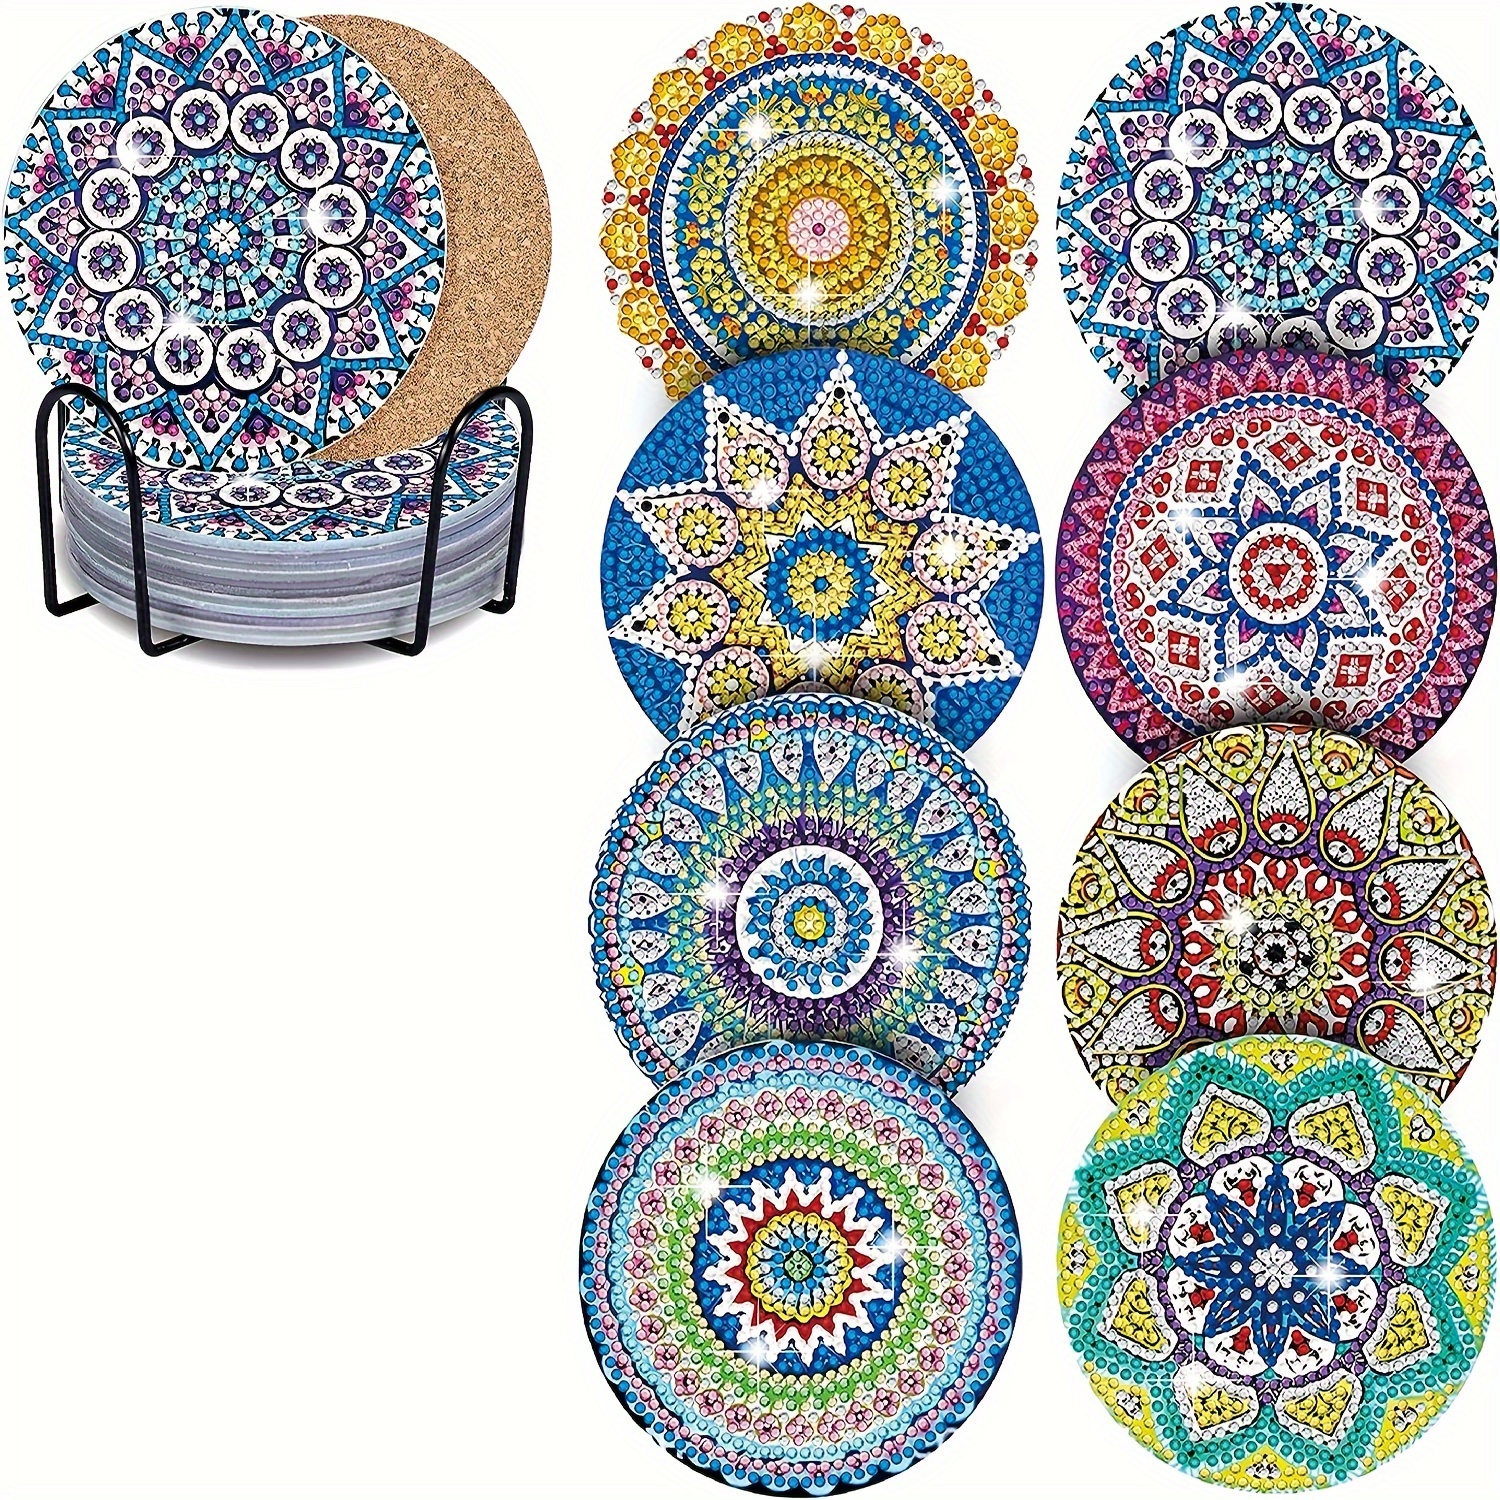 Diamond Painting Kits, Diamond Painting Coasters with Holder, 3.9 Diamond  Art Coasters DIY Mandala Cup Coasters Diamond Art Kits Box for